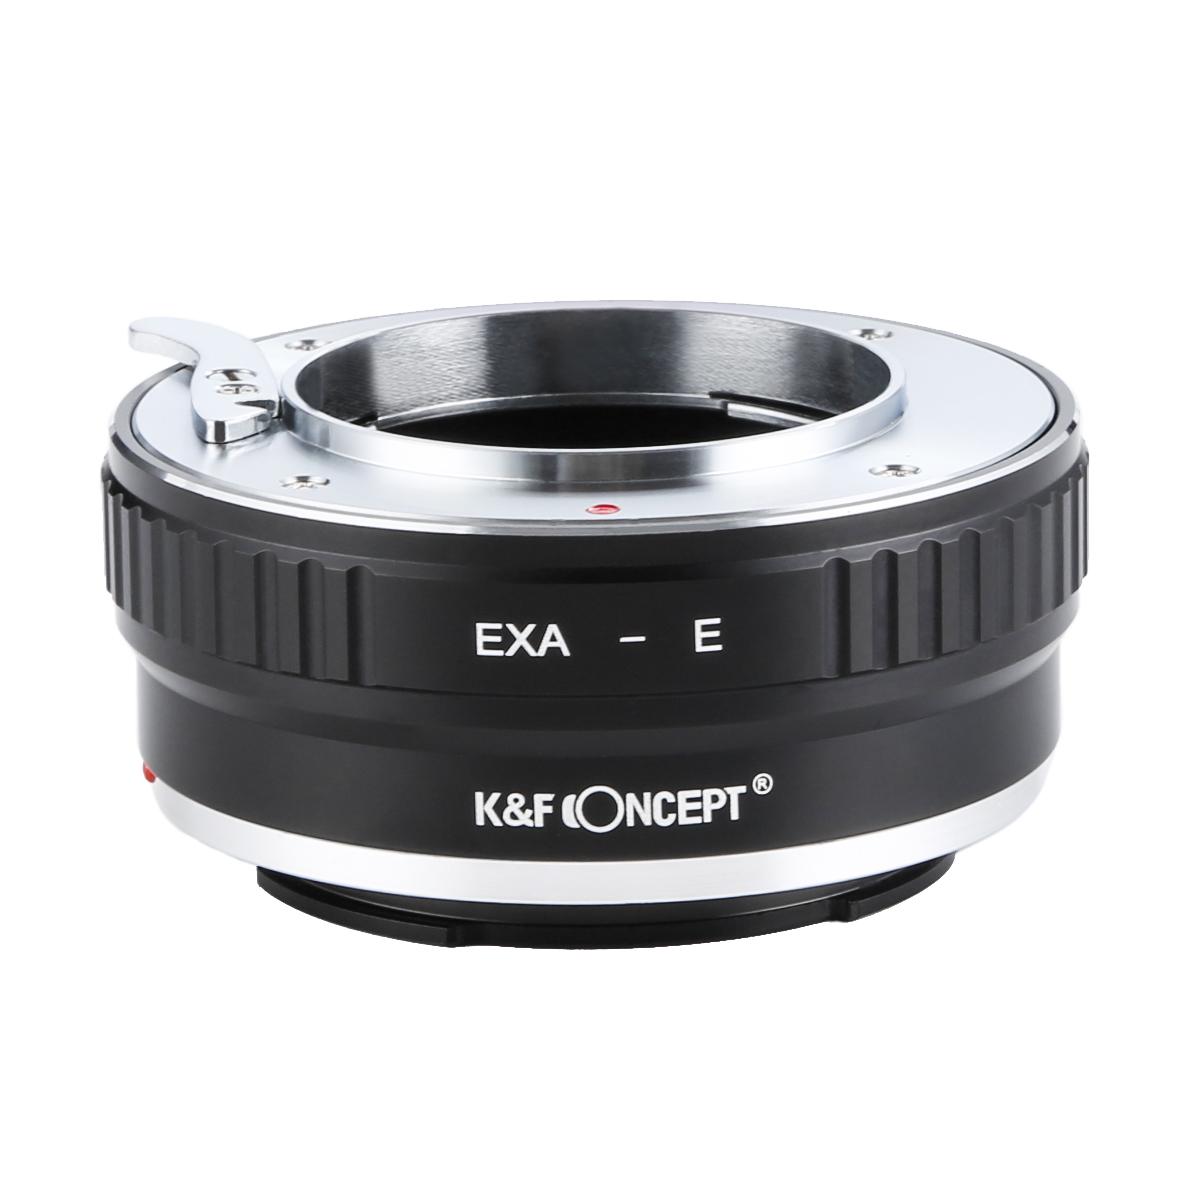 K&F Concept Lens Adapter KF06.336 for EXA - NEX